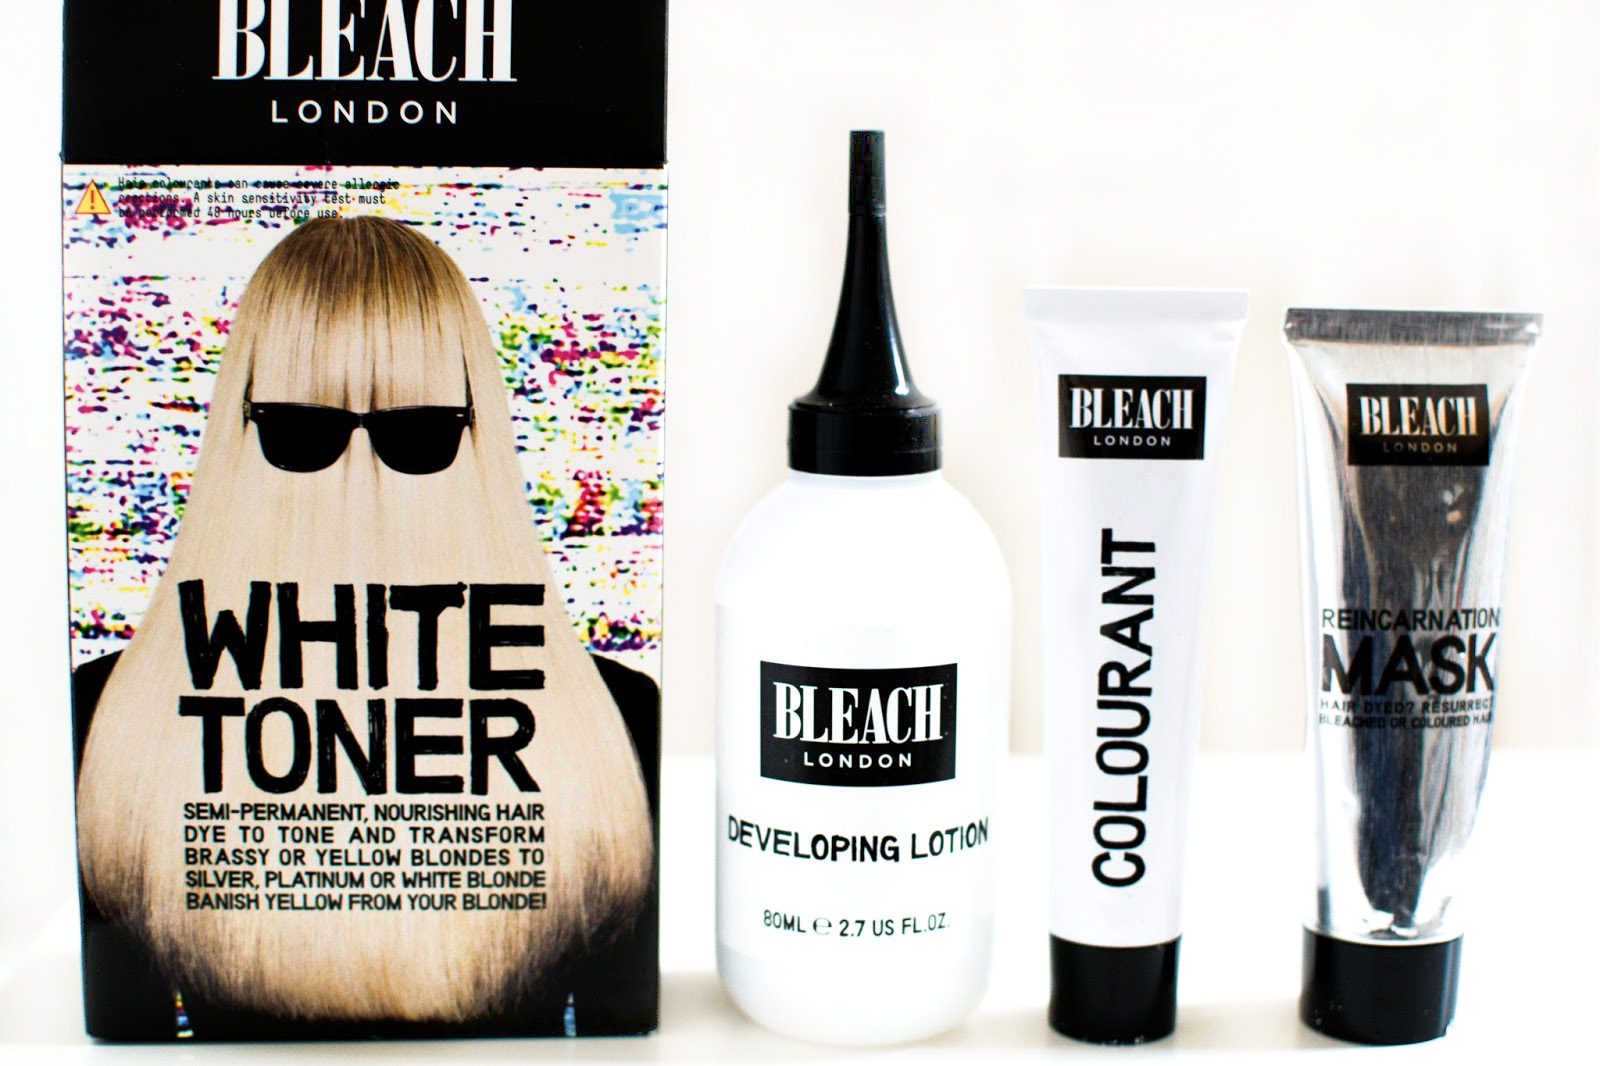 Bleach London White Toner Kit - wide 3